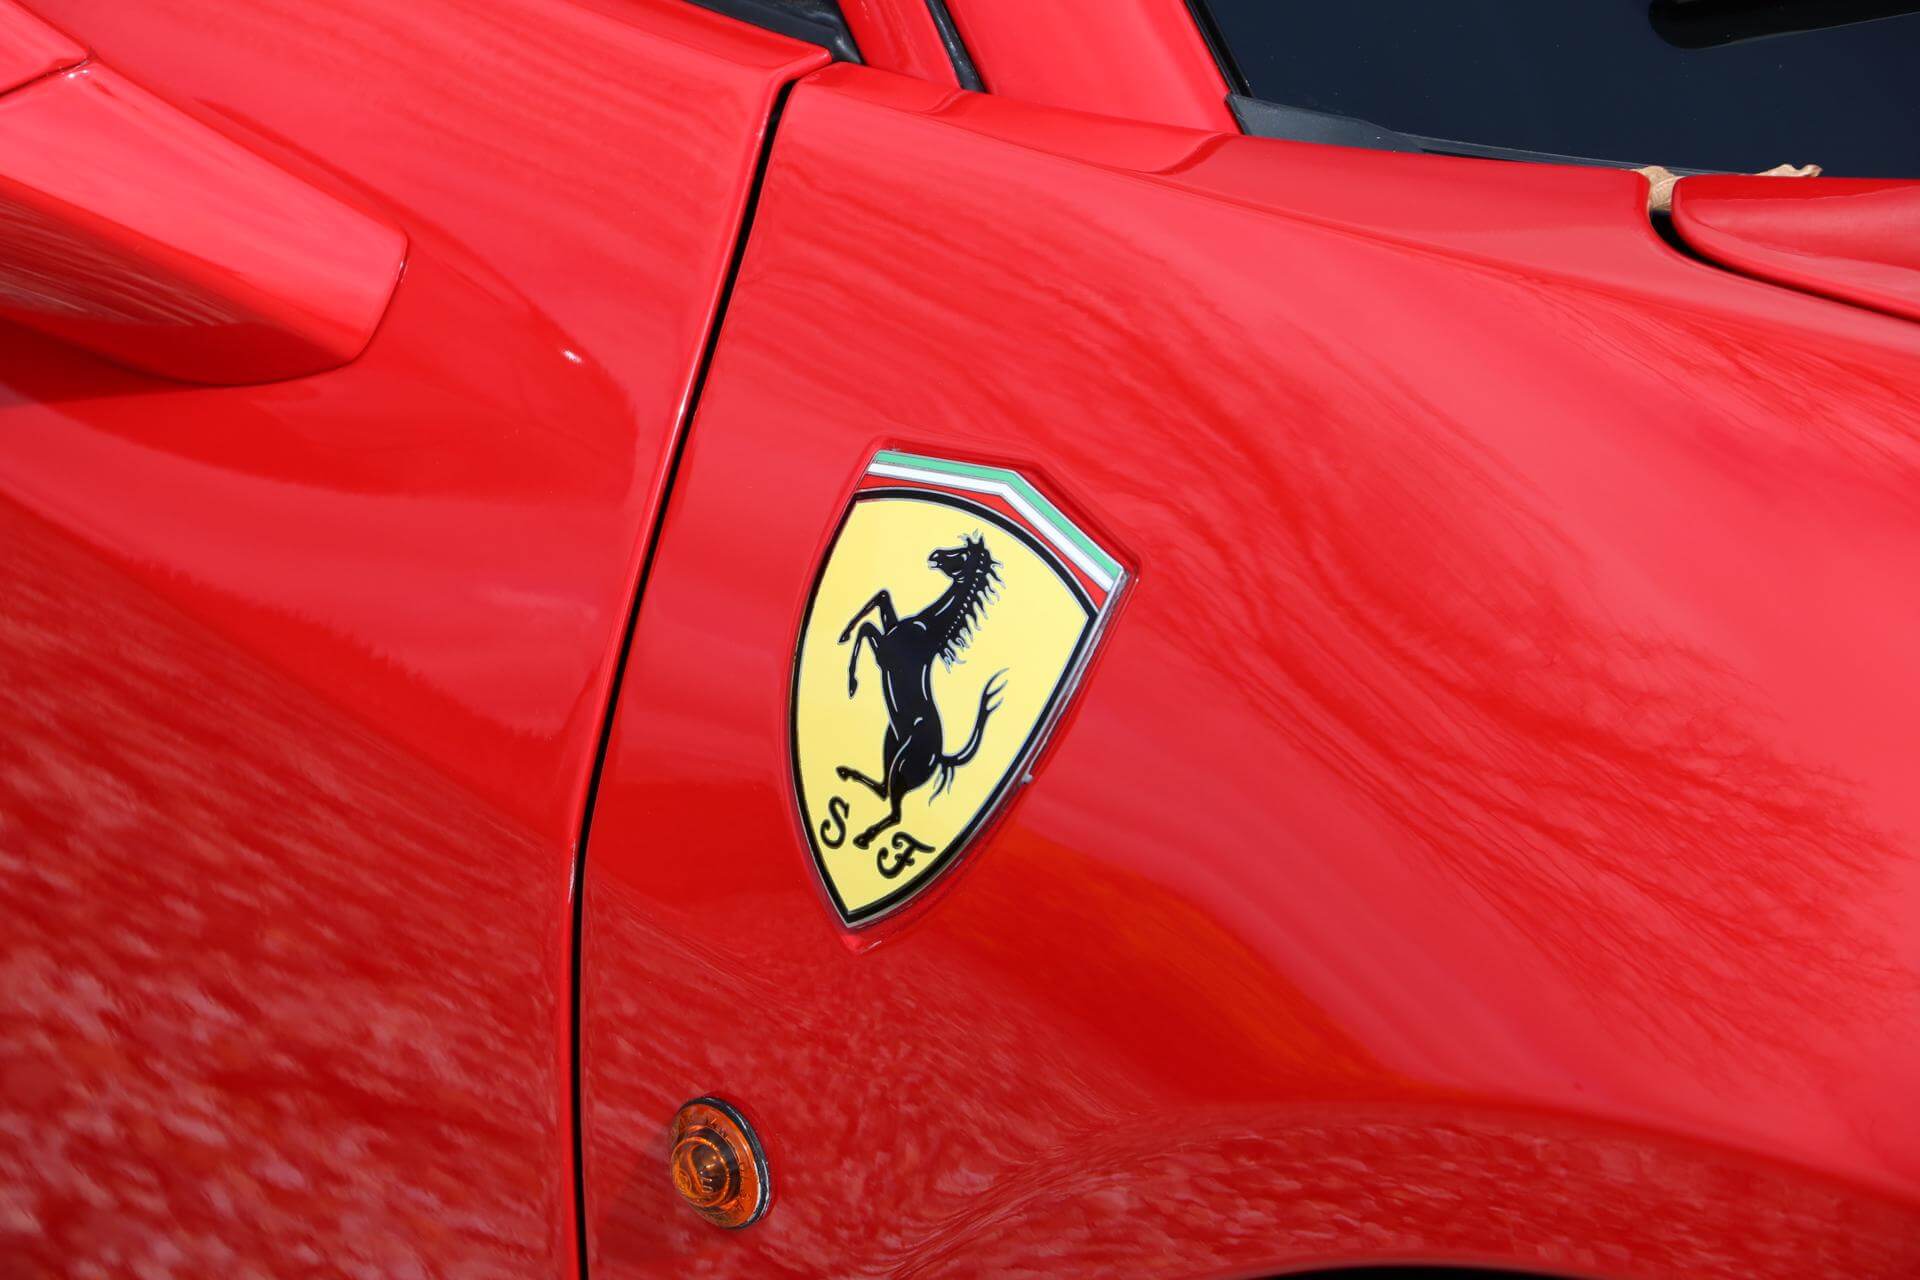 Real Art on Wheels | 2011 Ferrari 458 Italia